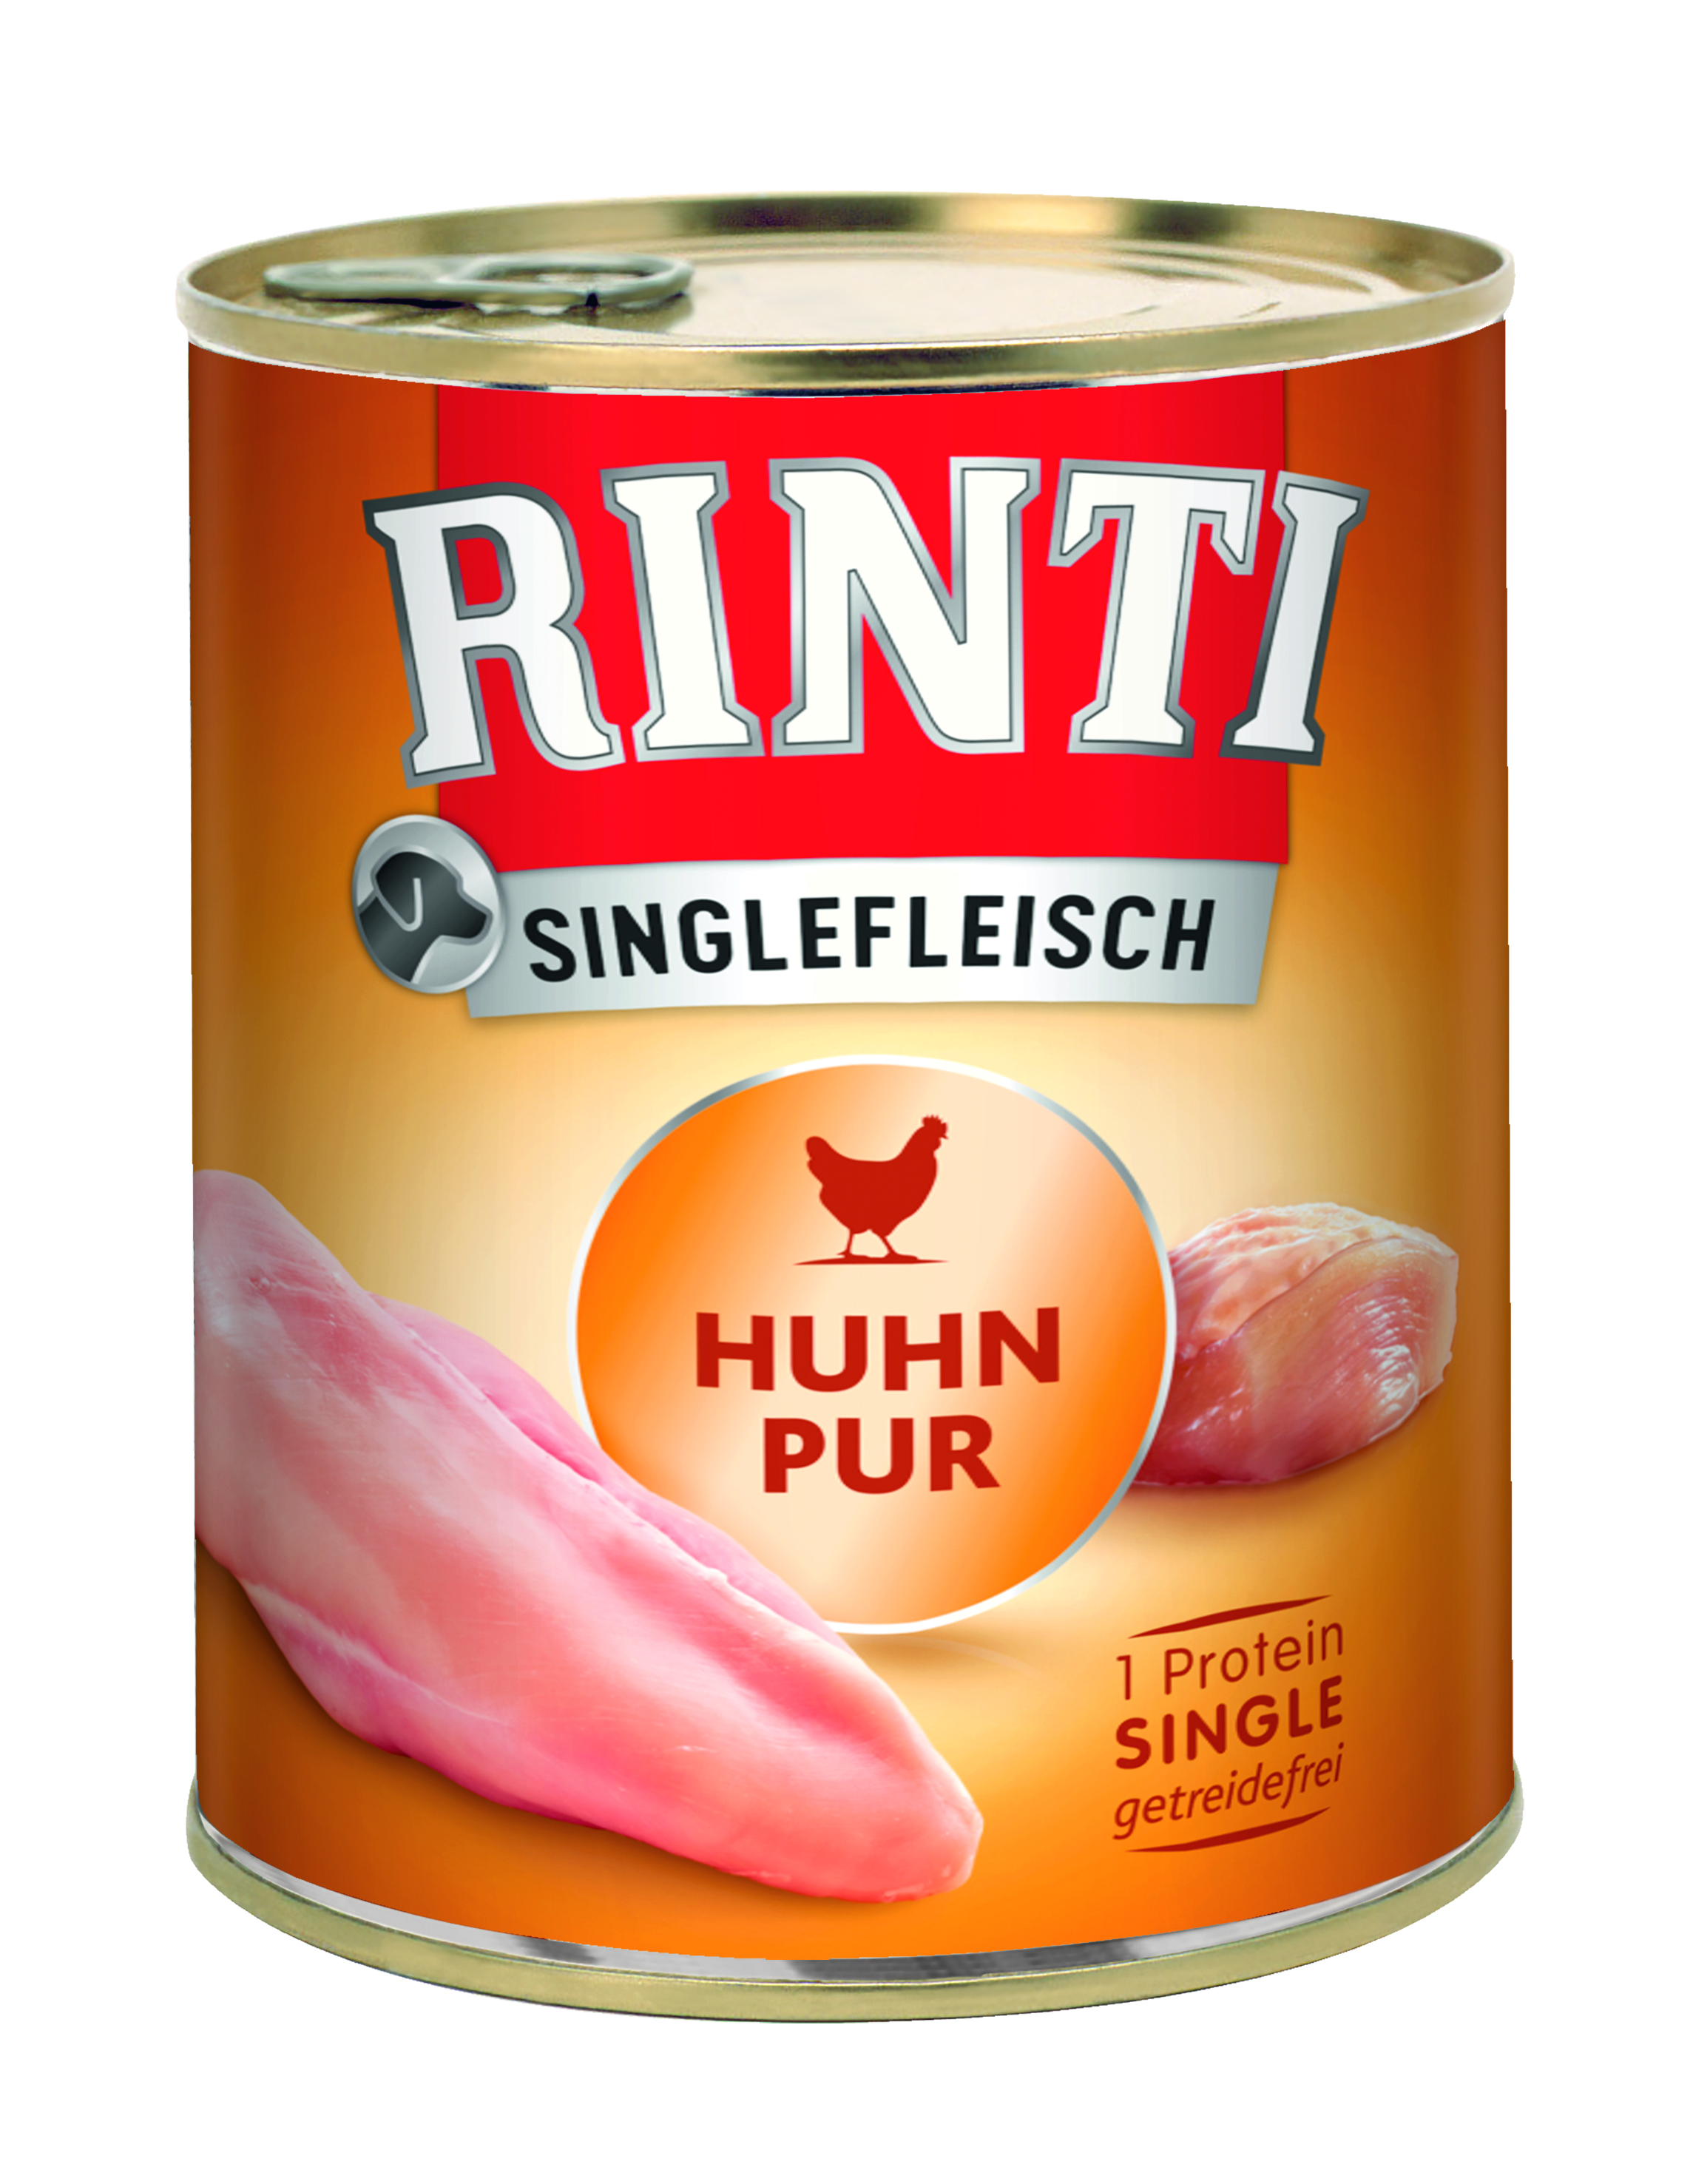 Rinti Singlefleisch Huhn Pur 800g